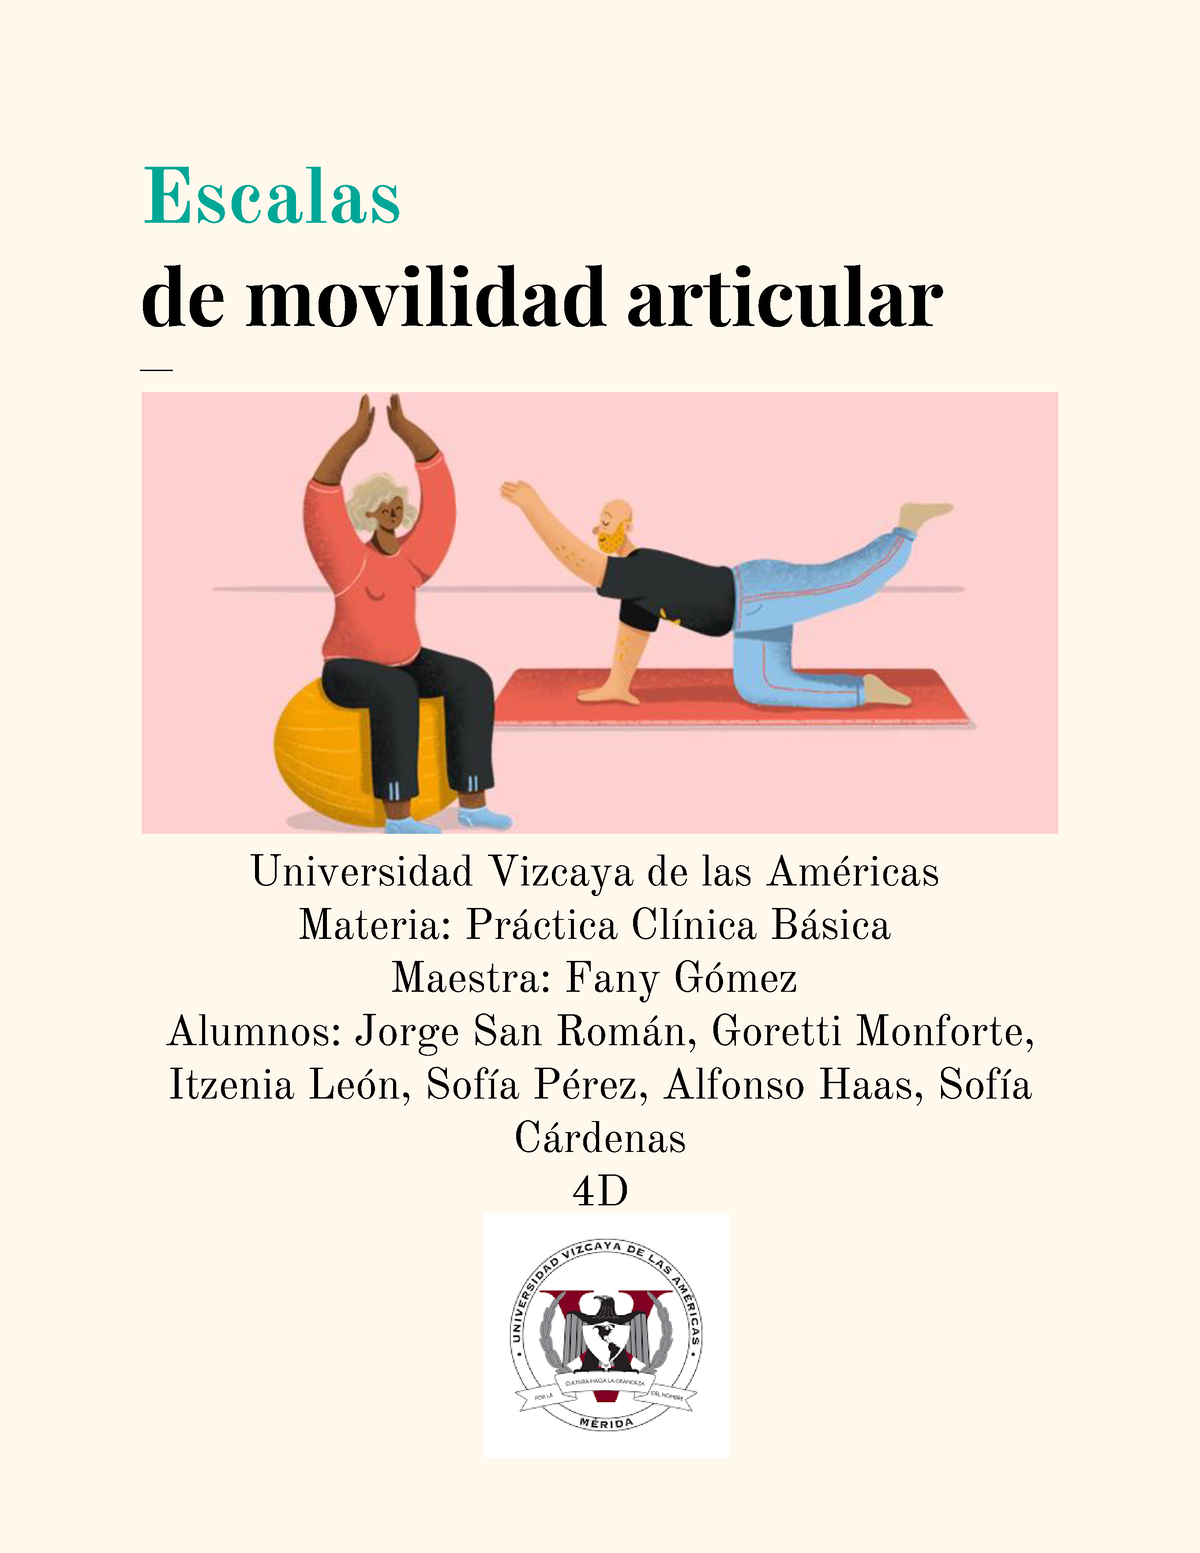 Escala De Movilidad Escalas De Movilidad Articular Universidad Vizcaya De Las AmÈricas 3121